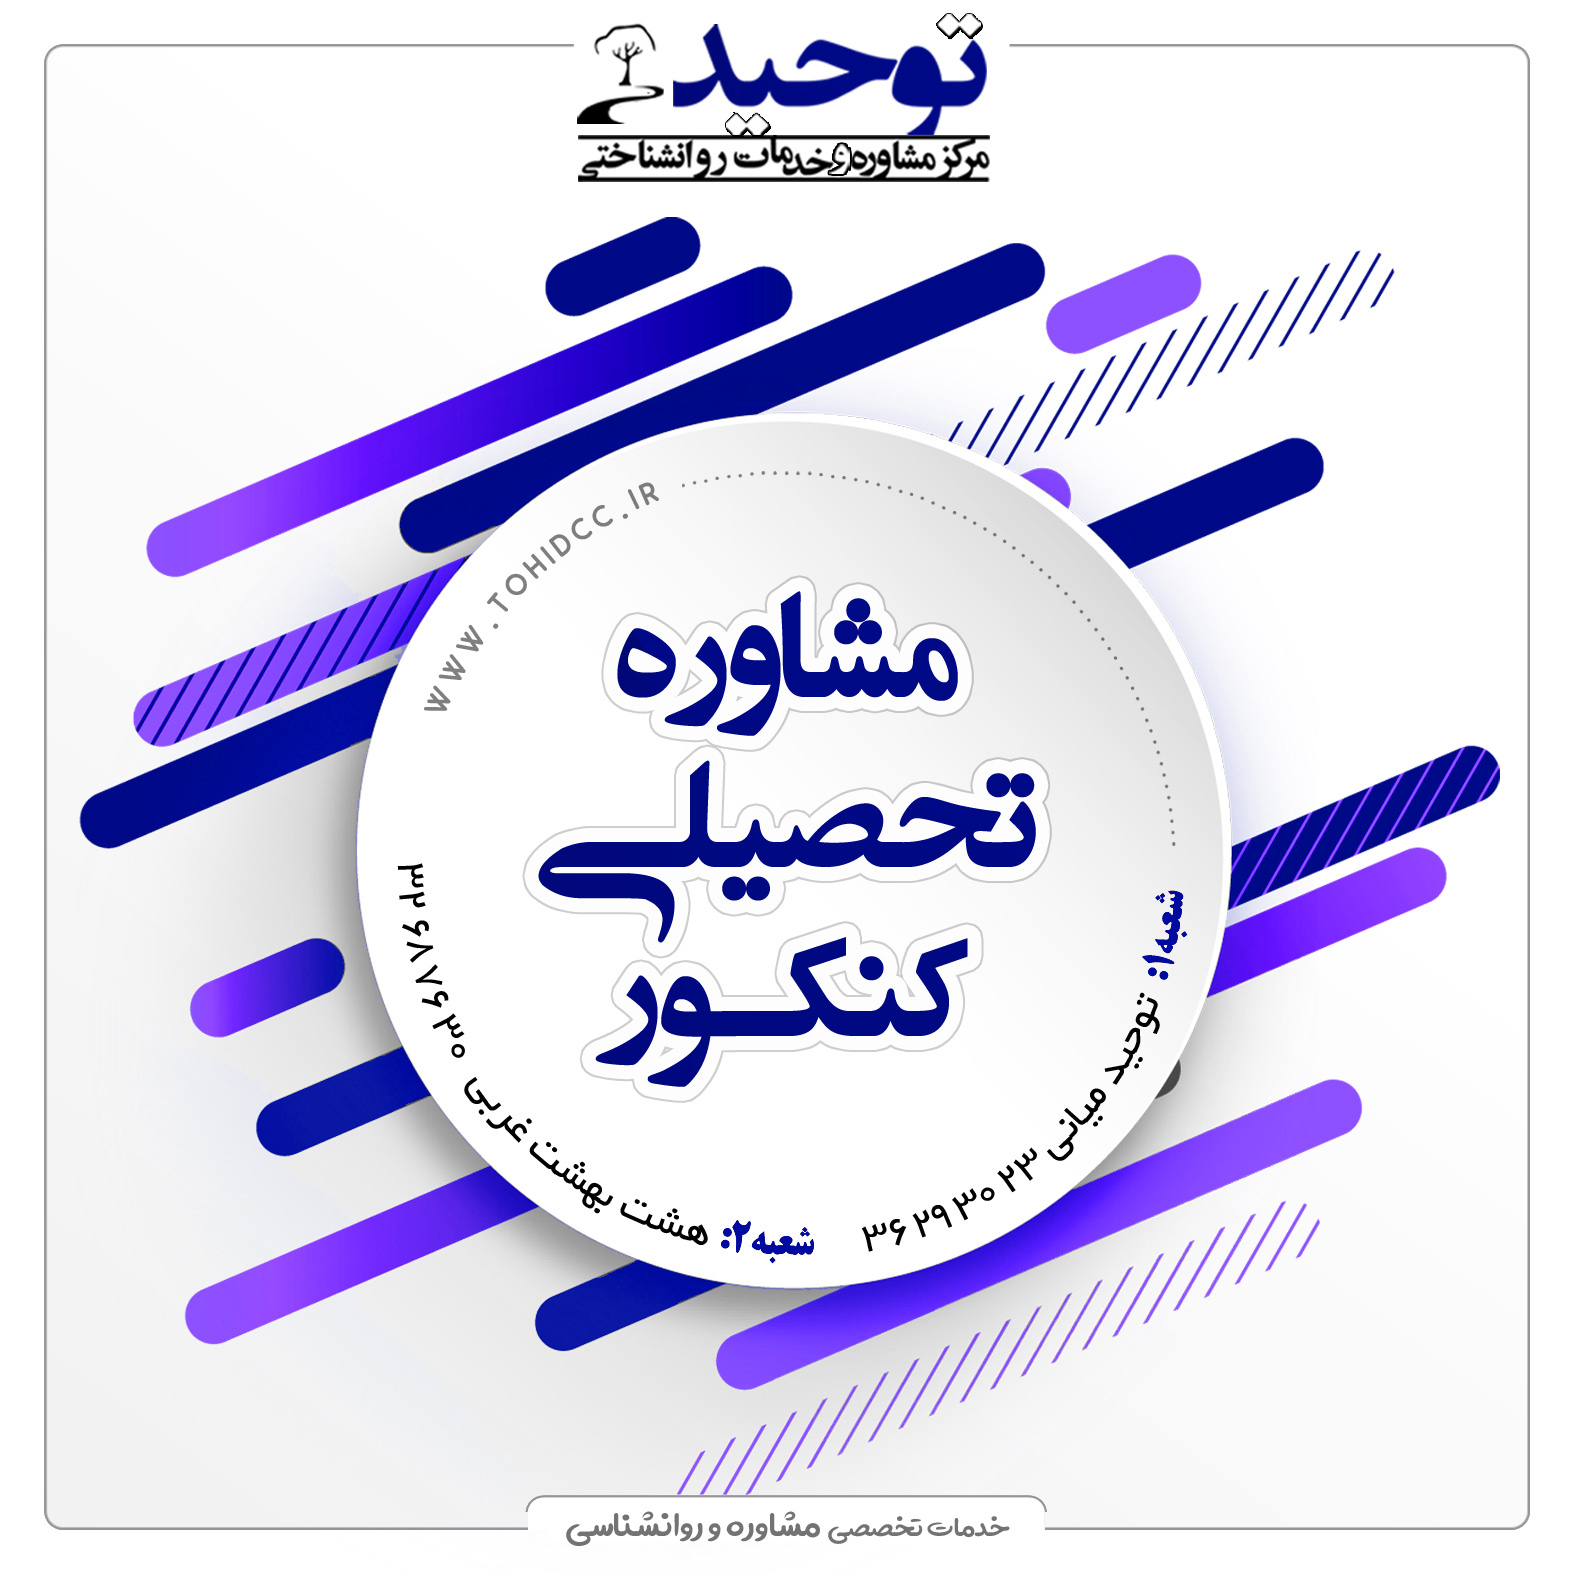 مشاوره تحصیلی تلفنی در اصفهان
